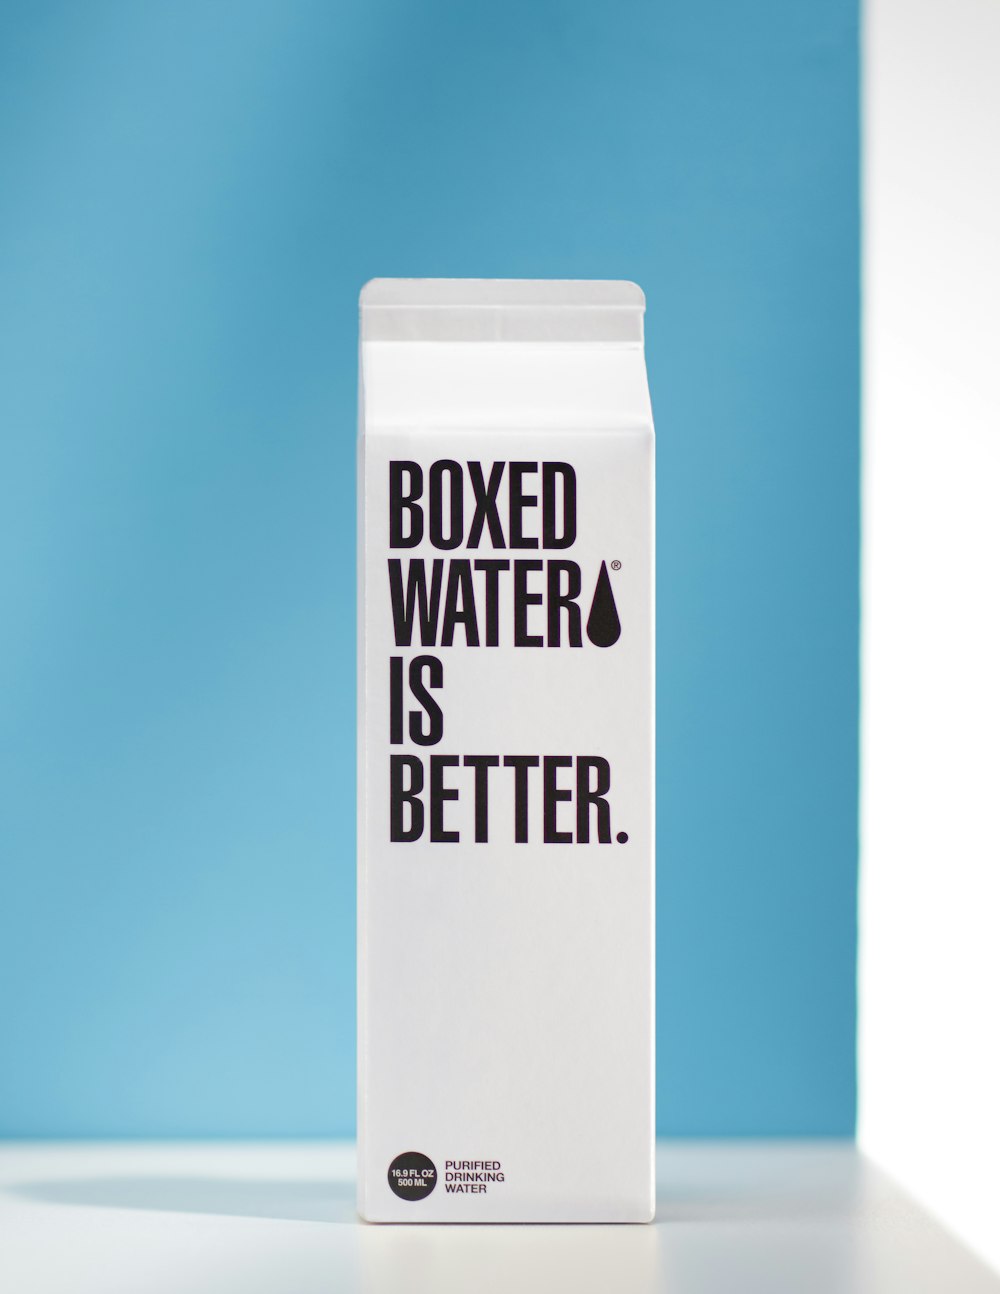 Ein Wasserkarton mit der Aufschrift "Verpacktes Wasser" ist besser